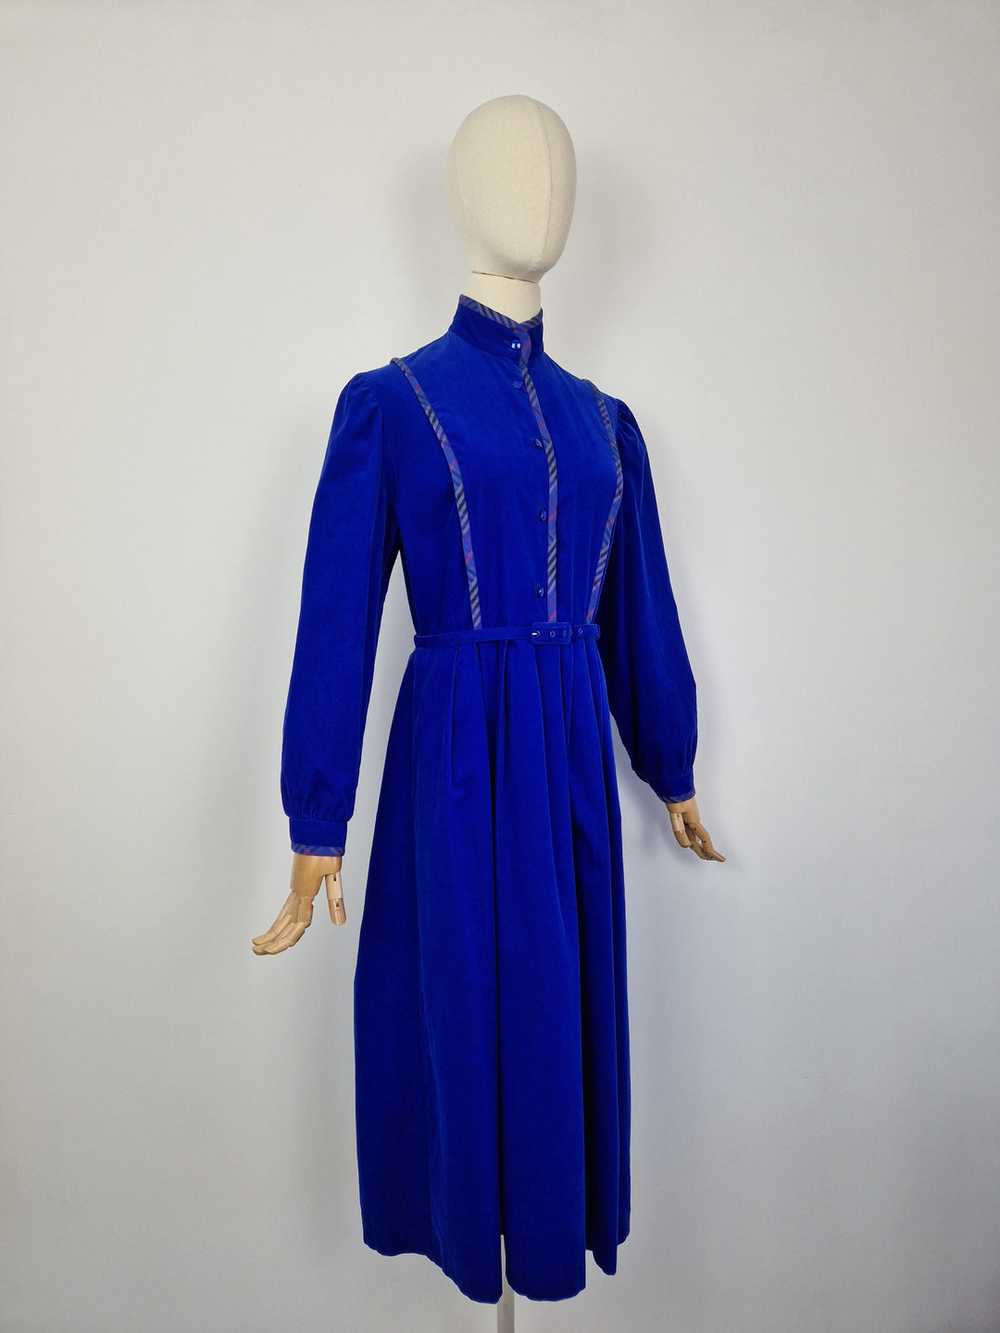 Vintage 80s Marion Donaldson corduroy dress - image 4